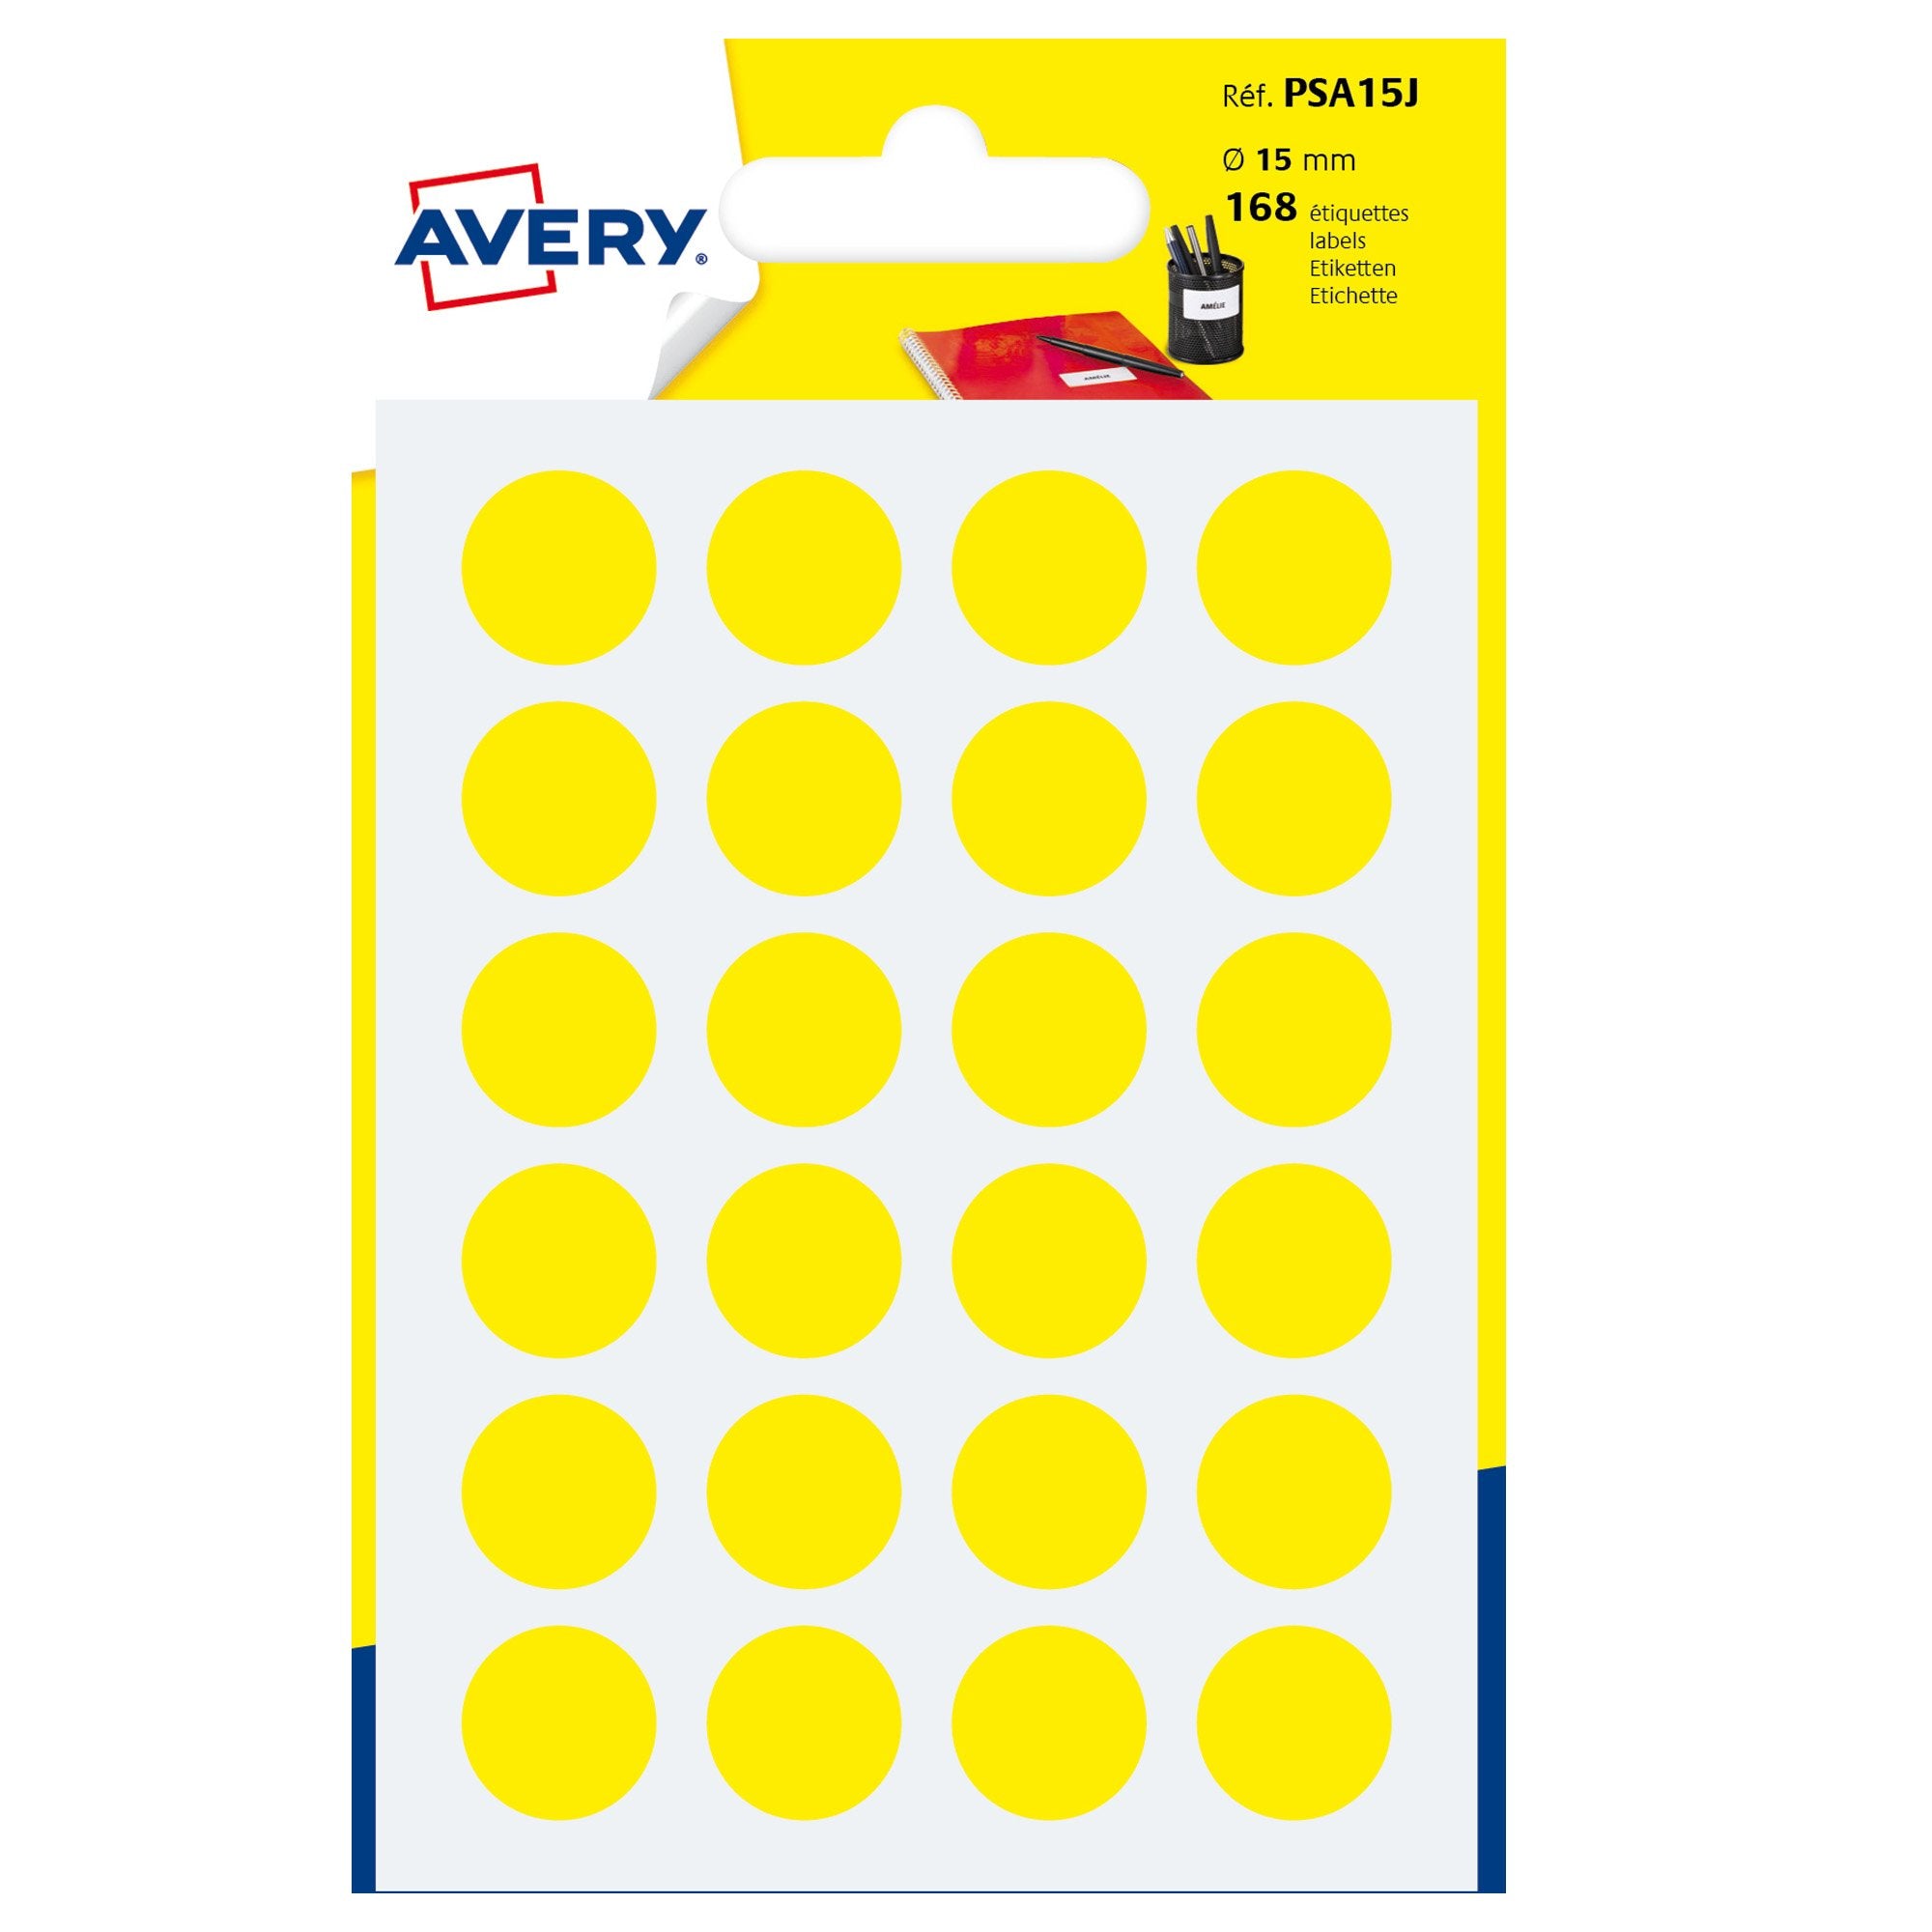 avery-blister-168-etichetta-adesiva-tonda-psa-giallo-d15mm